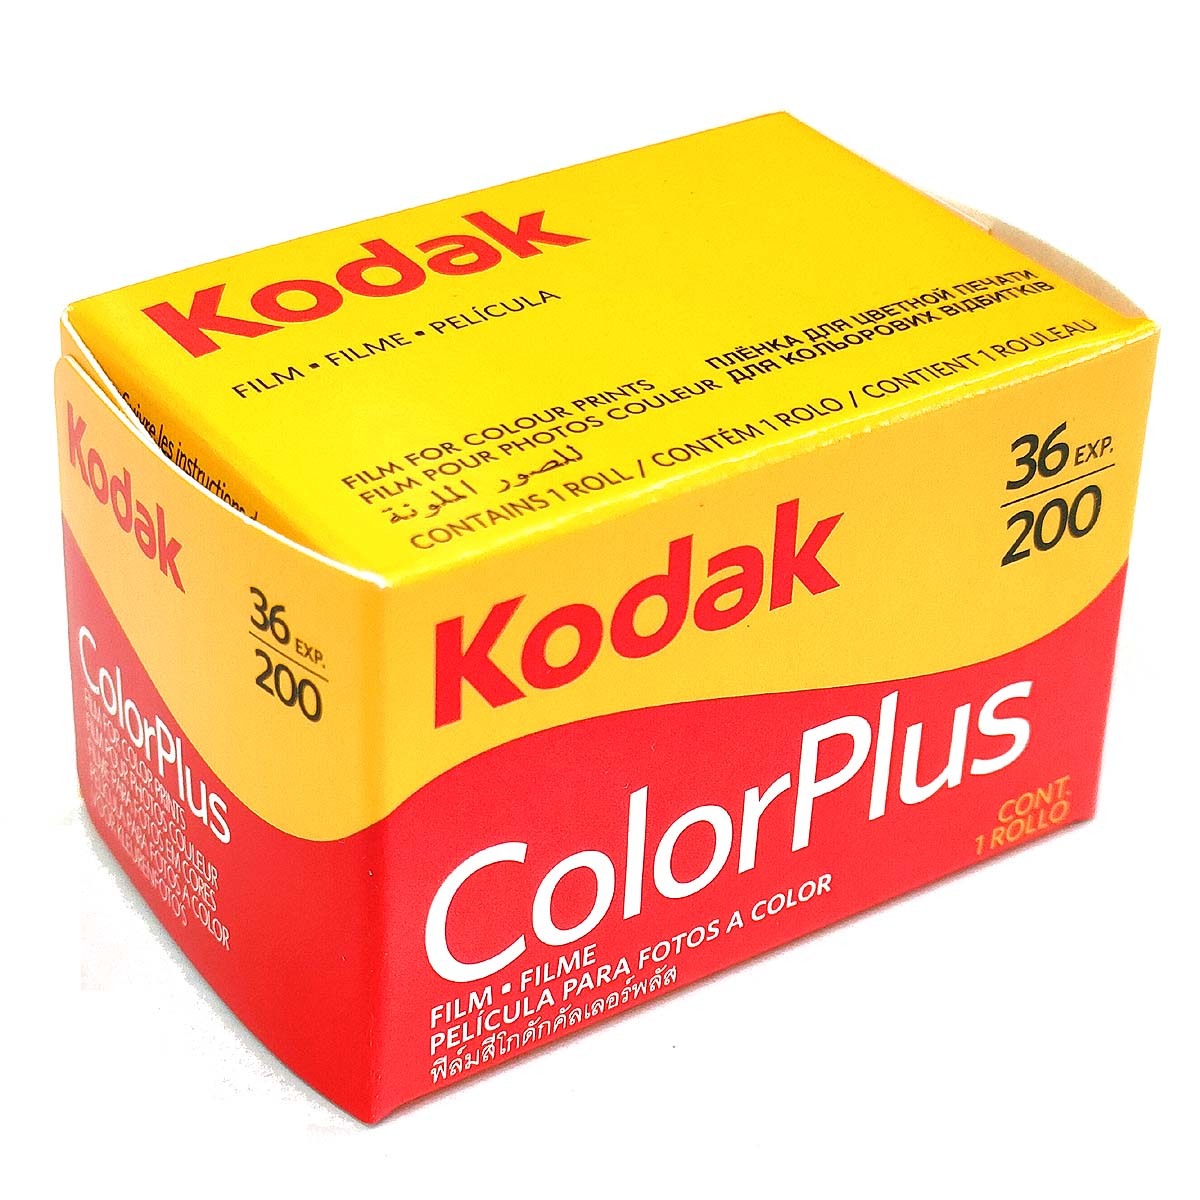 Color Plus 200-36 листов .[100шт.@]Kodak цвет nega плёнка ISO чувствительность 200 135/35mm[ быстрое решение ]ko Duck CAT603-1470*0086806031479 новый товар оригинальная коробка 